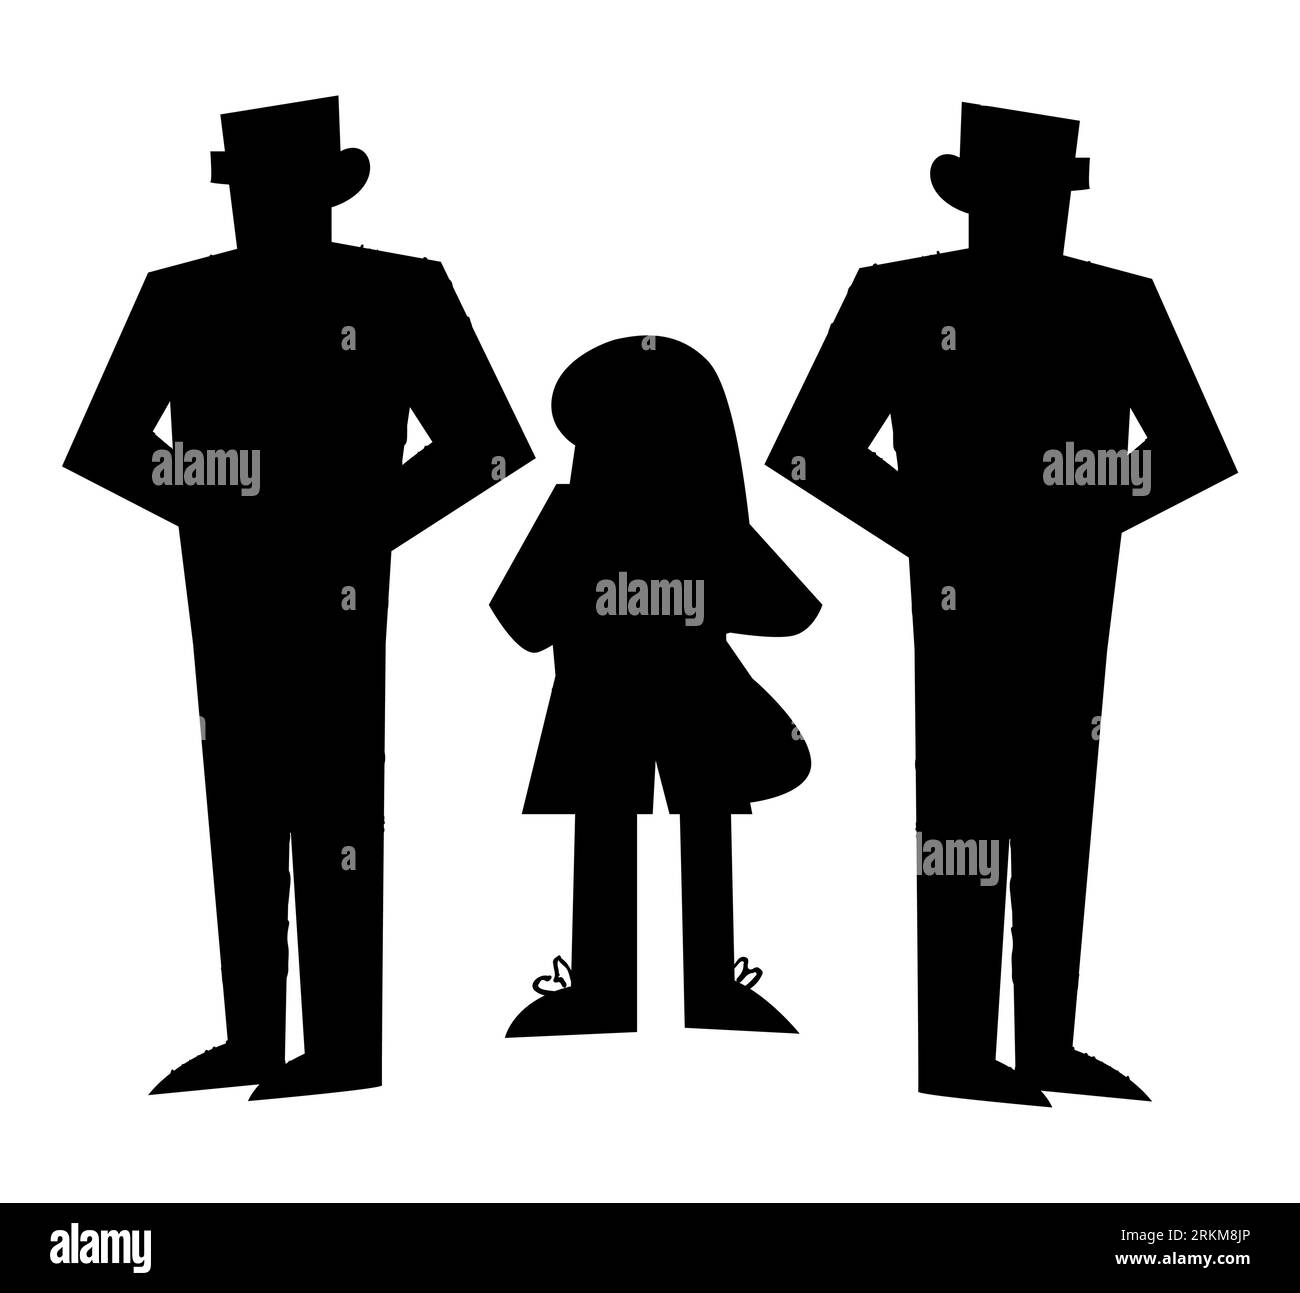 Schwarze Silhouette eines kleinen Mädchens, umgeben von Bodyguards, Sicherheitsleute, die ein Mädchen schützen, Vektorillustration isoliert auf weißem Hintergrund Stock Vektor